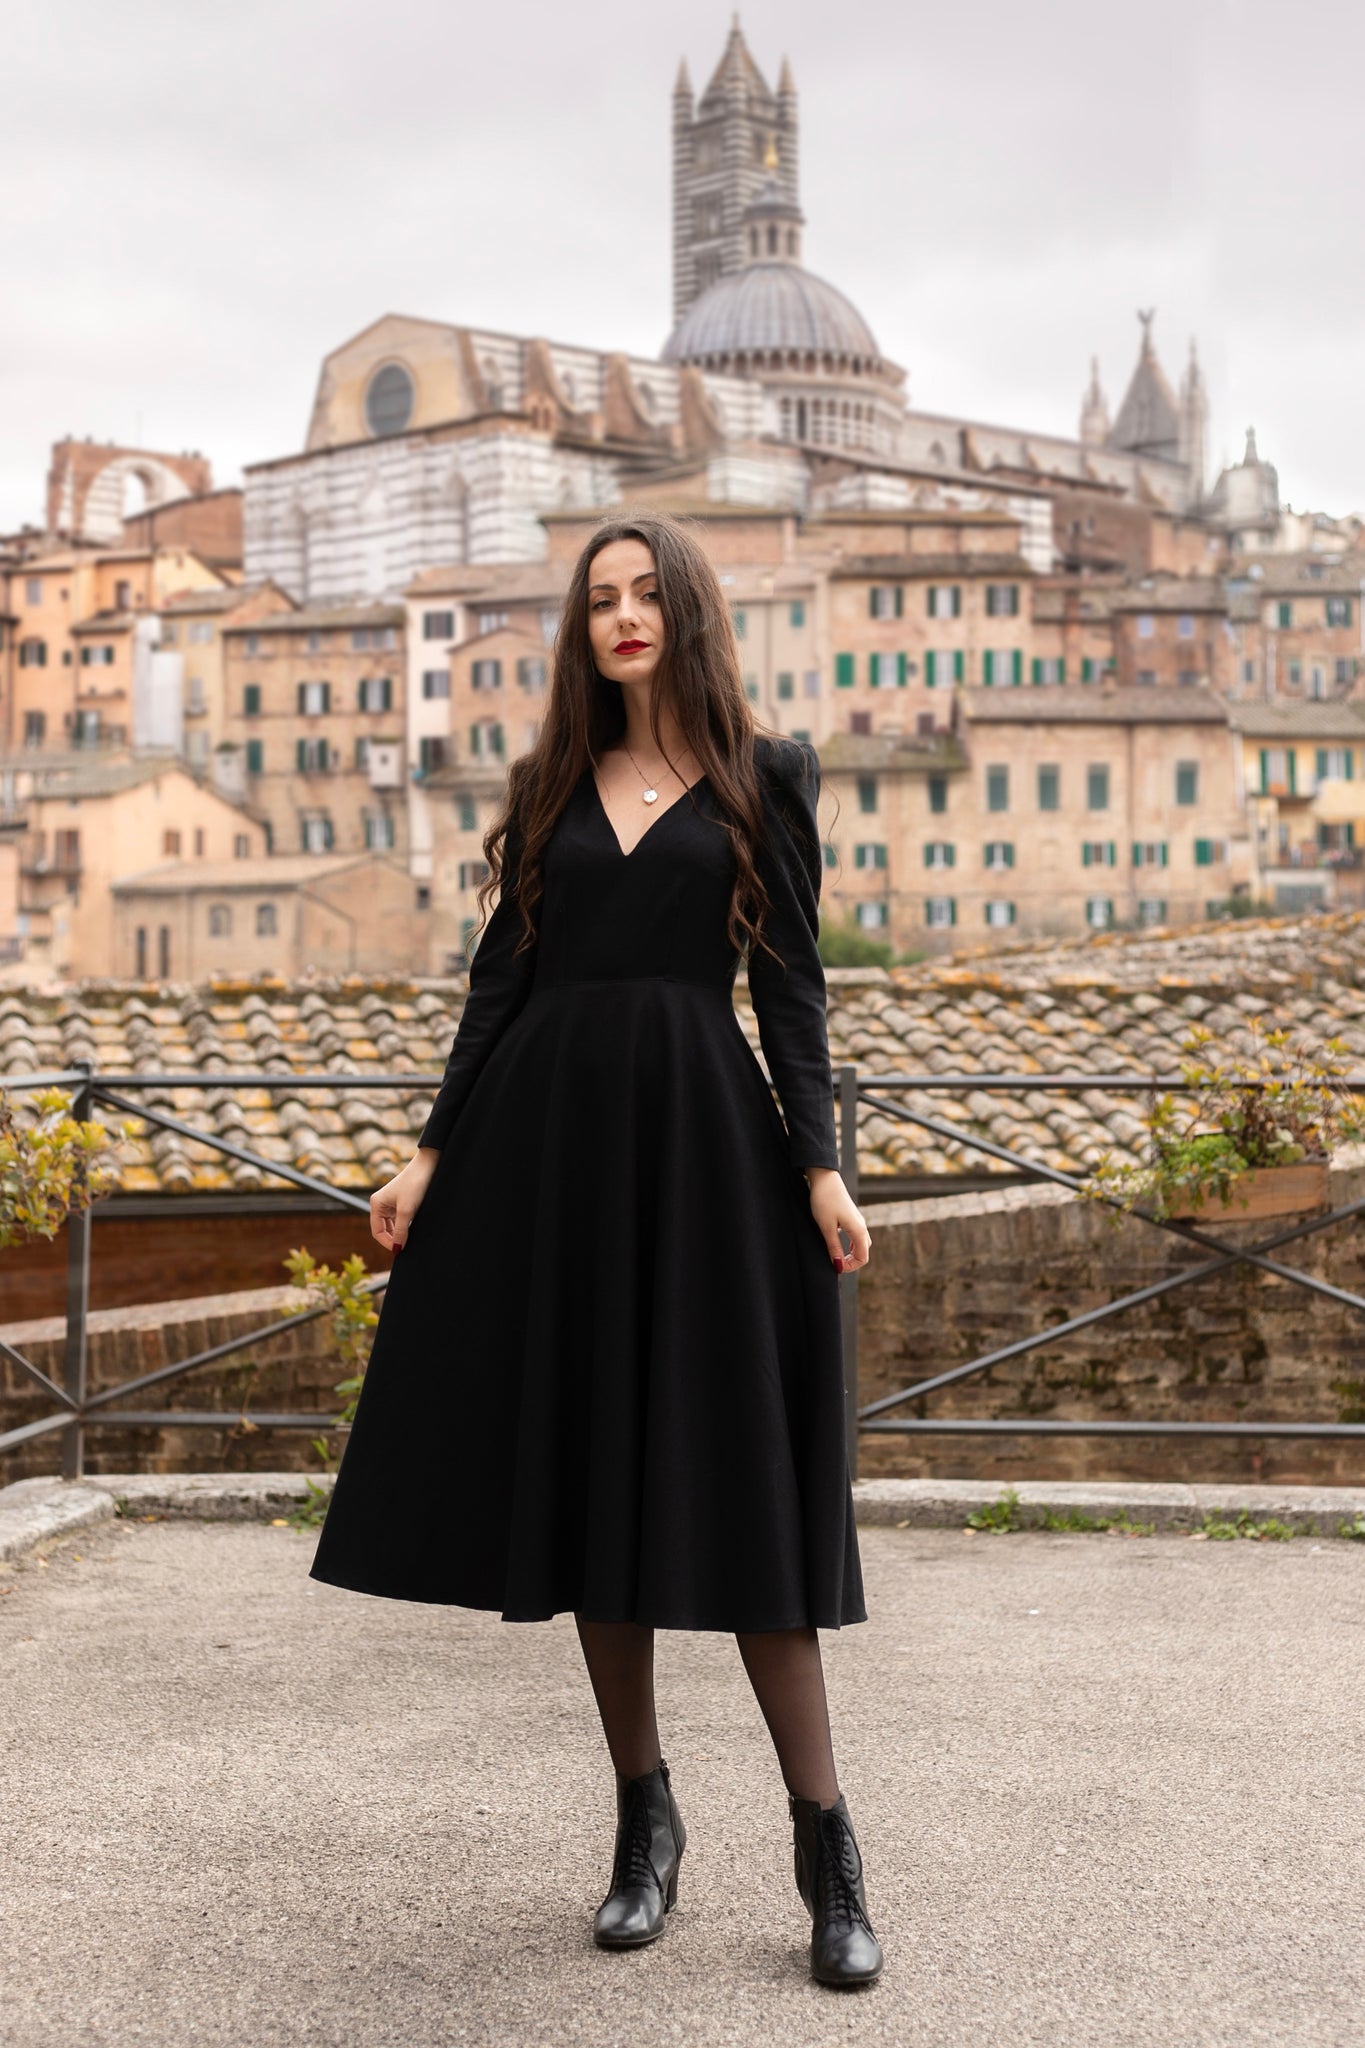 Women Grey Long Sleeve Wool Dress 3849 – XiaoLizi